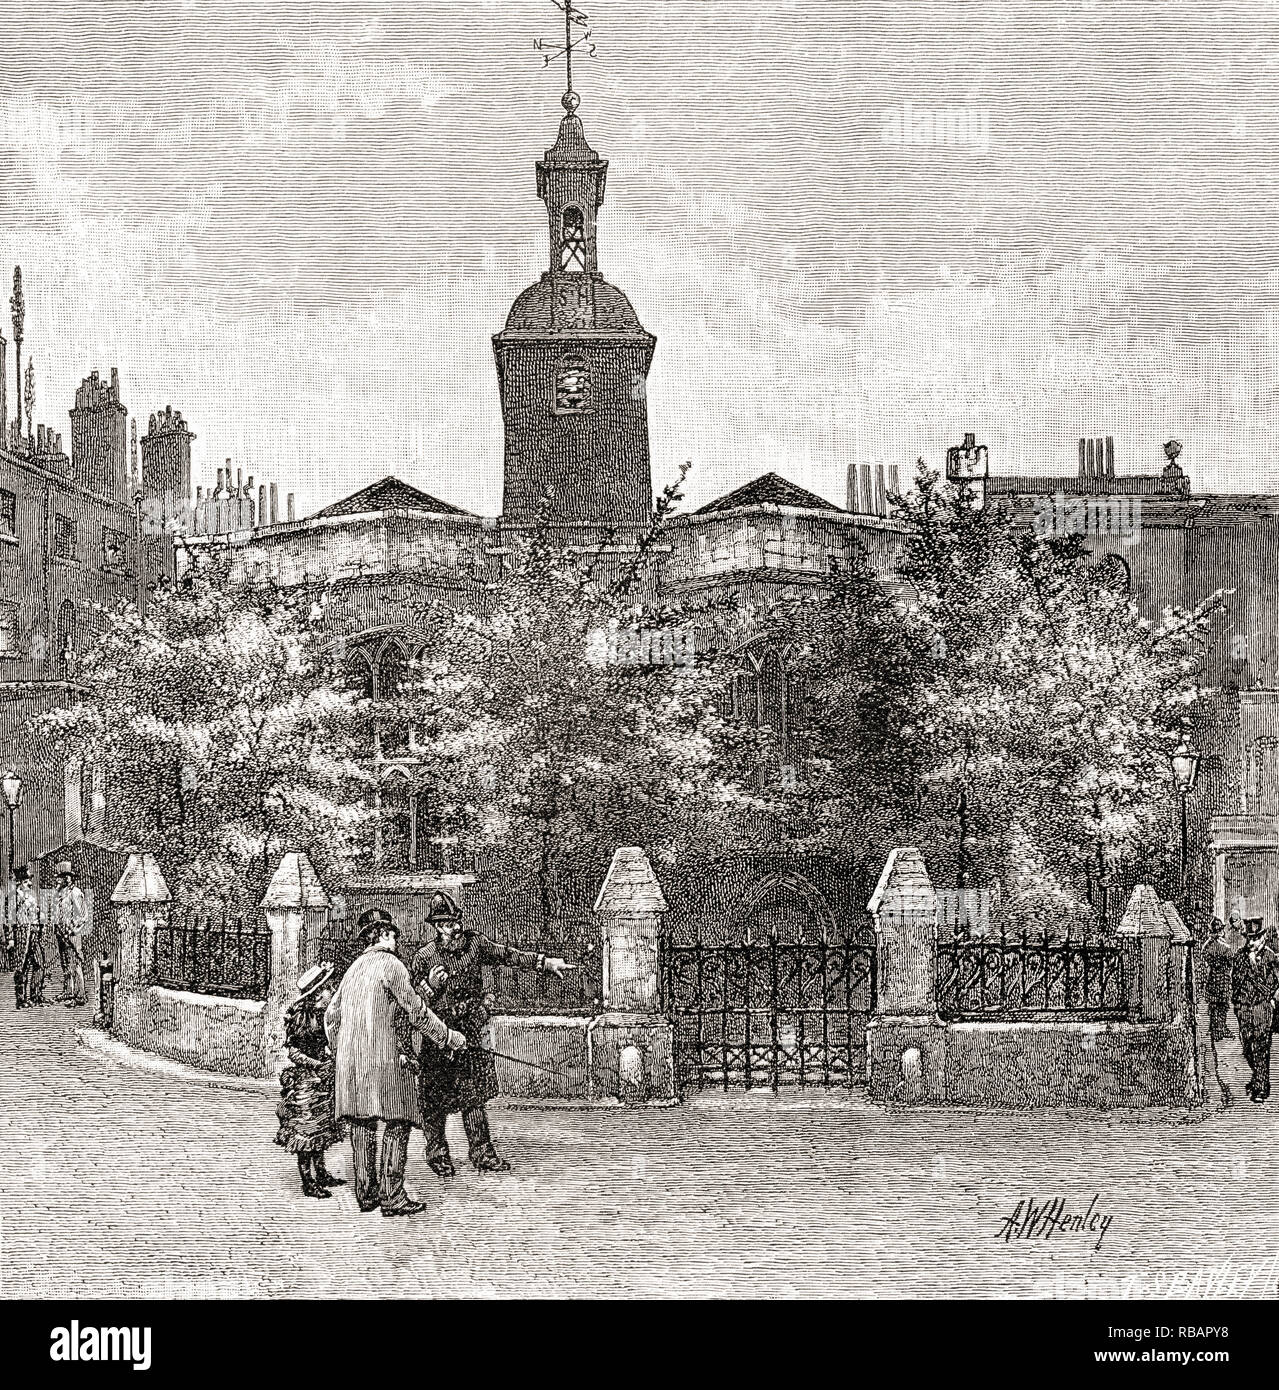 St. Helen's Church, Bishopsgate, London, England, hier im 19. Jahrhundert. Von London Bilder, veröffentlicht 1890 Stockfoto